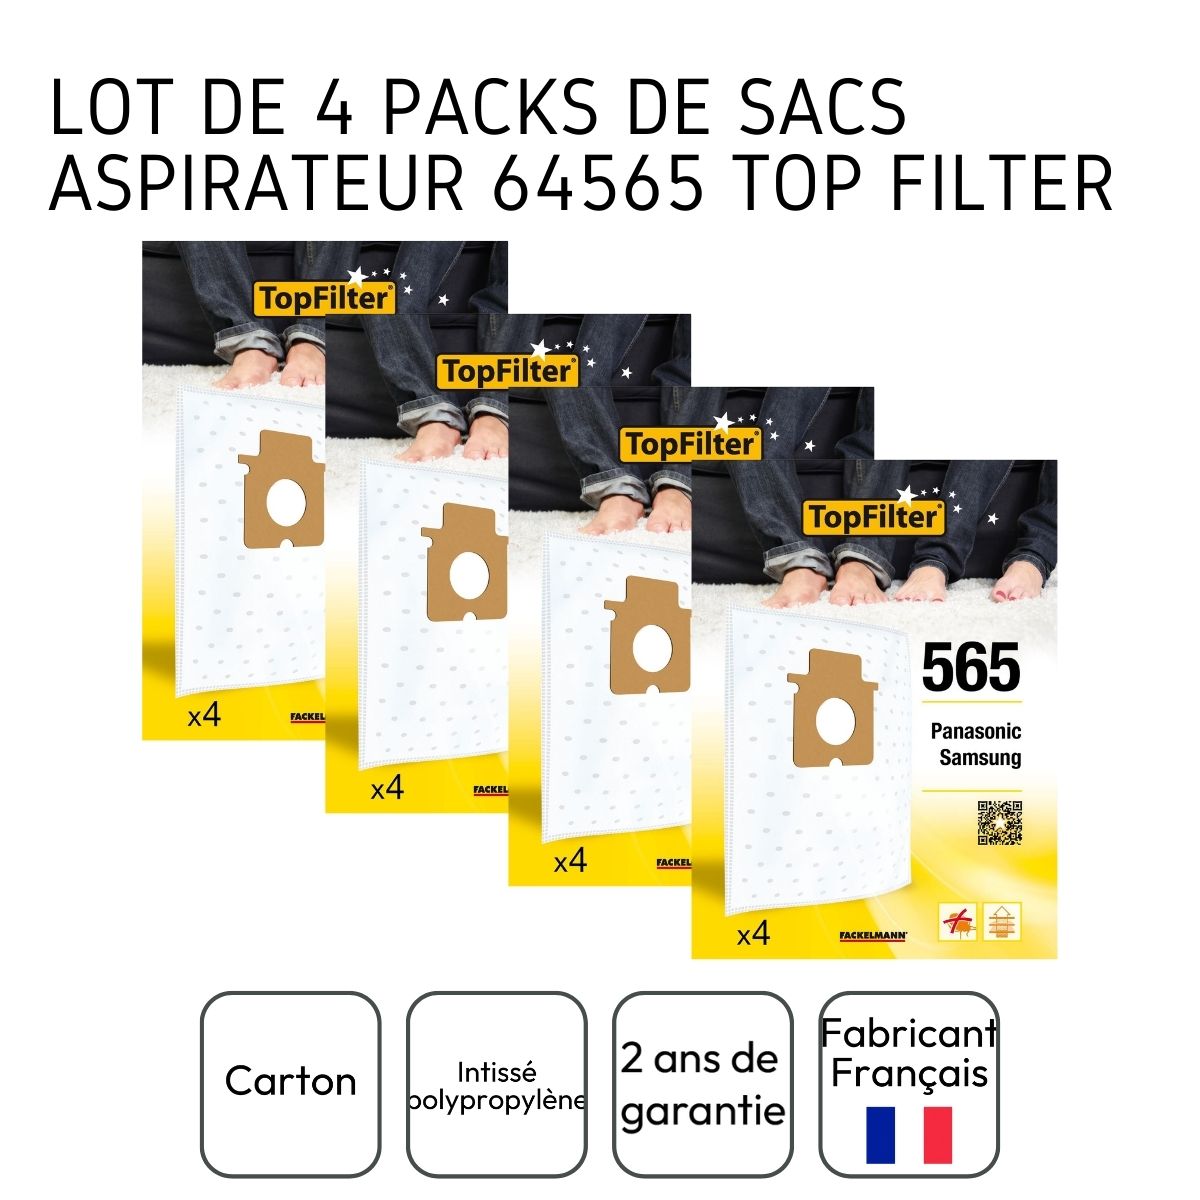 Lot de 4 packs de 4 sacs aspirateur 64565 pour Samsung et Panasonic TopFilter Premium